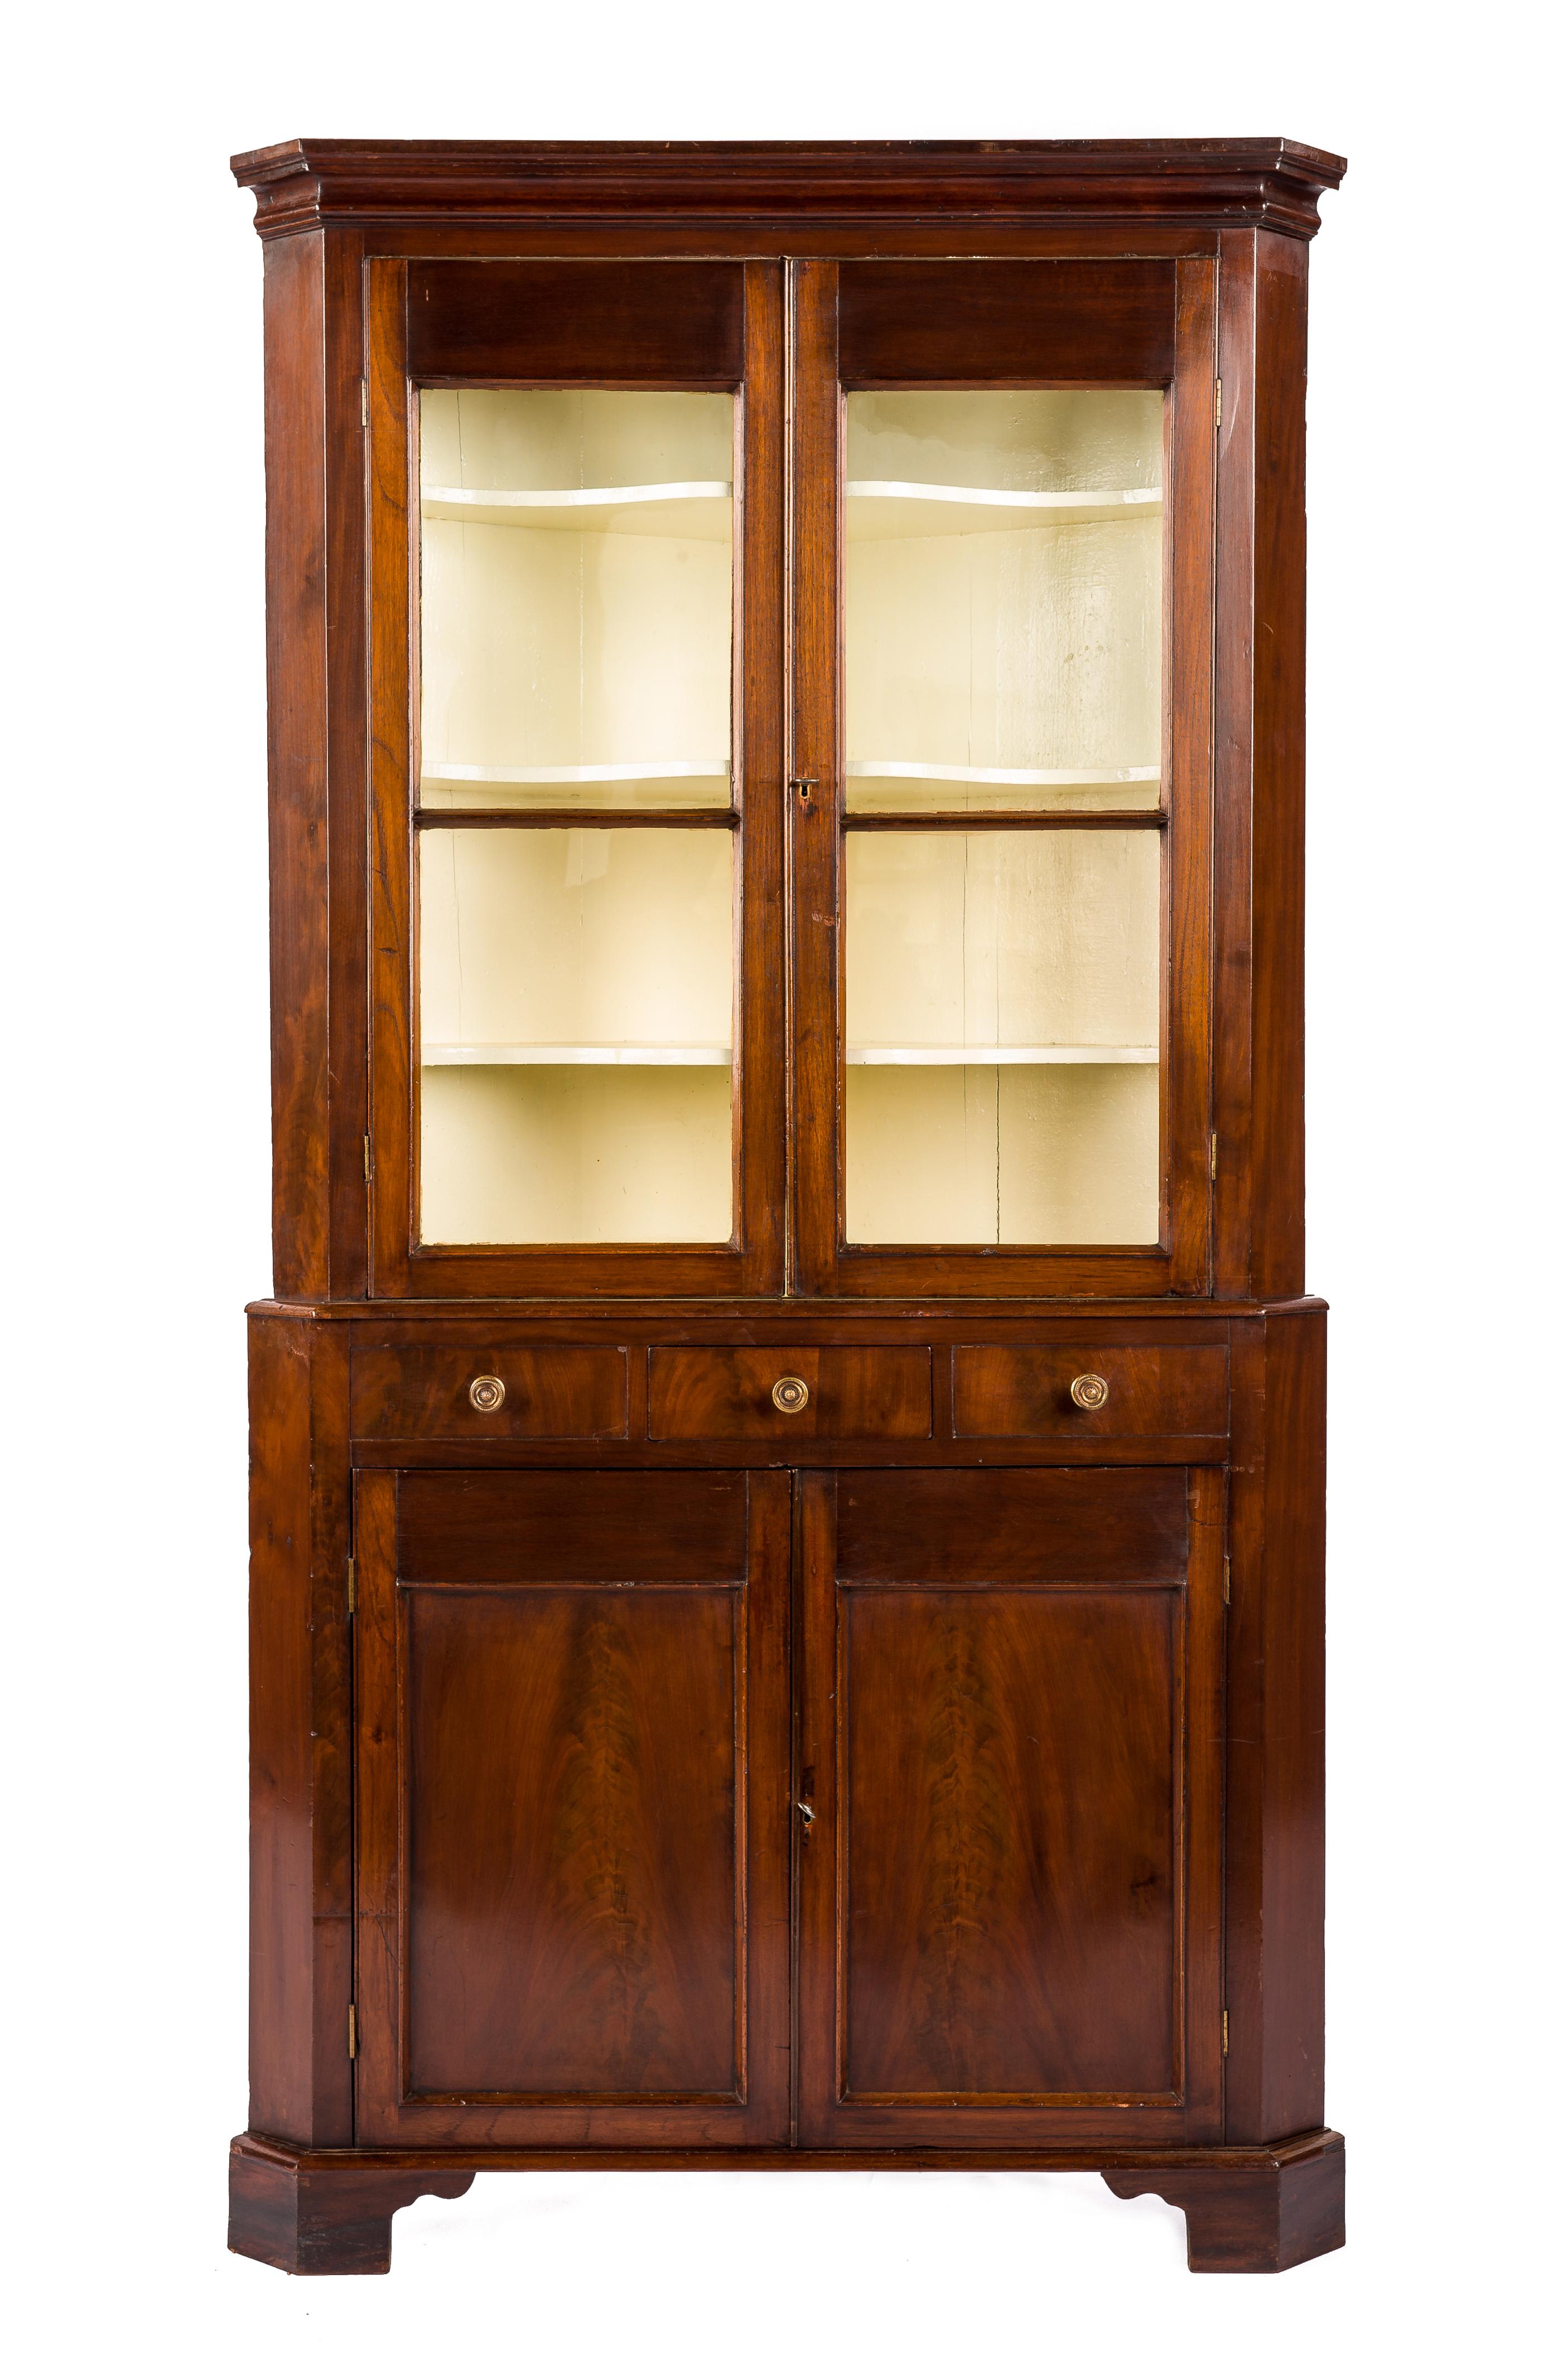 Cette magnifique armoire d'angle ancienne vitrée a été fabriquée au Royaume-Uni au début du XIXe siècle, vers 1820. L'armoire se compose d'un meuble inférieur et d'un meuble supérieur. L'armoire inférieure mesure 37 pouces de haut et comporte trois